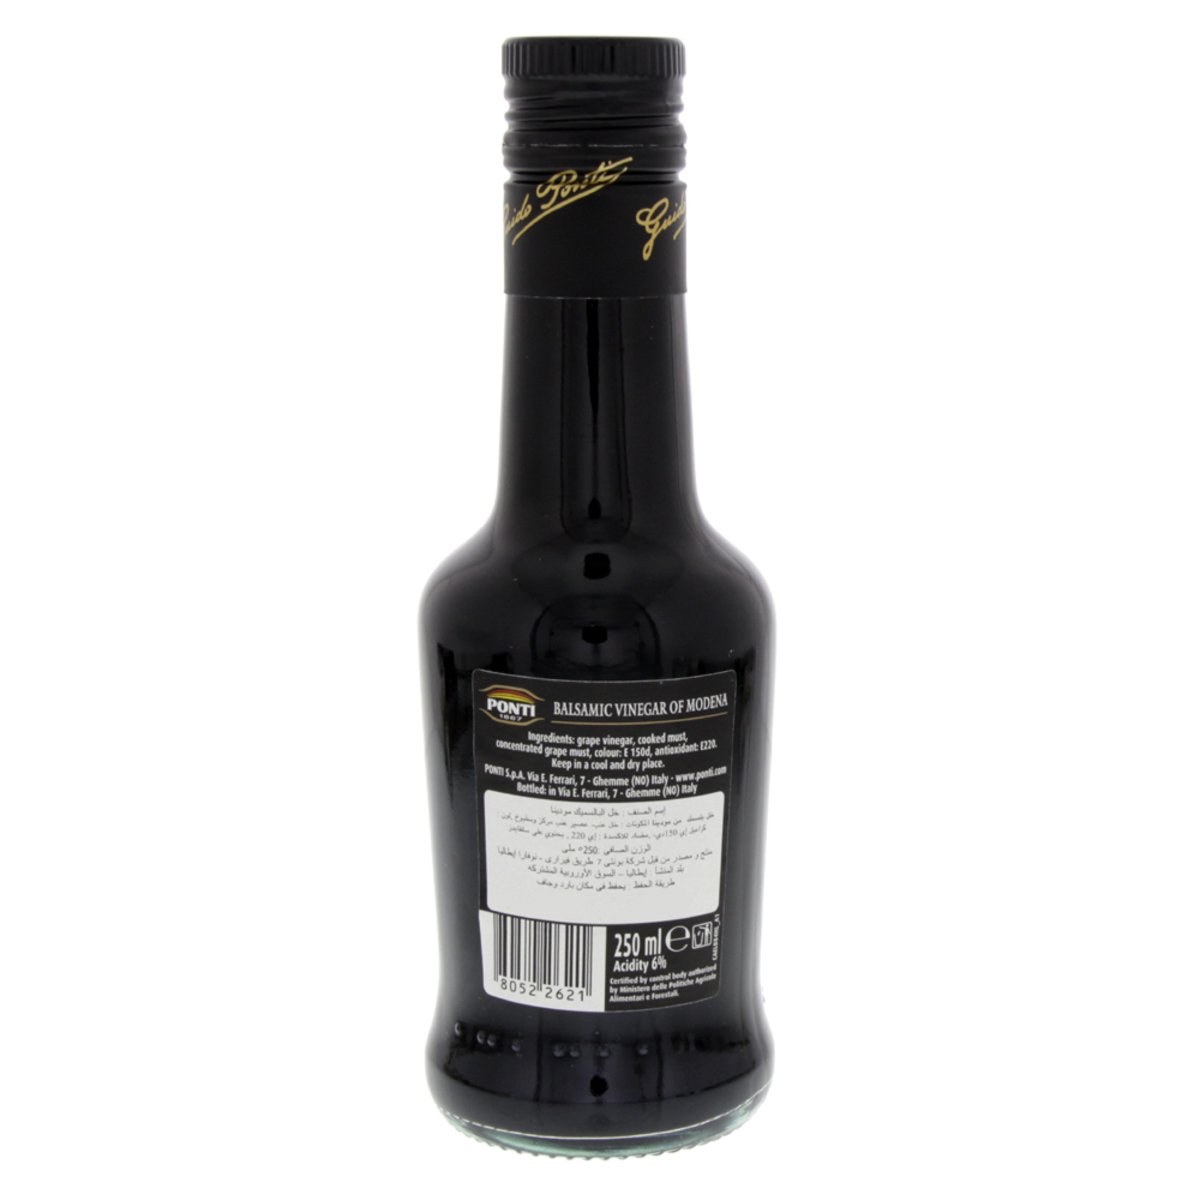 Ponti Balsamic Vinegar Of Modena 250 ml